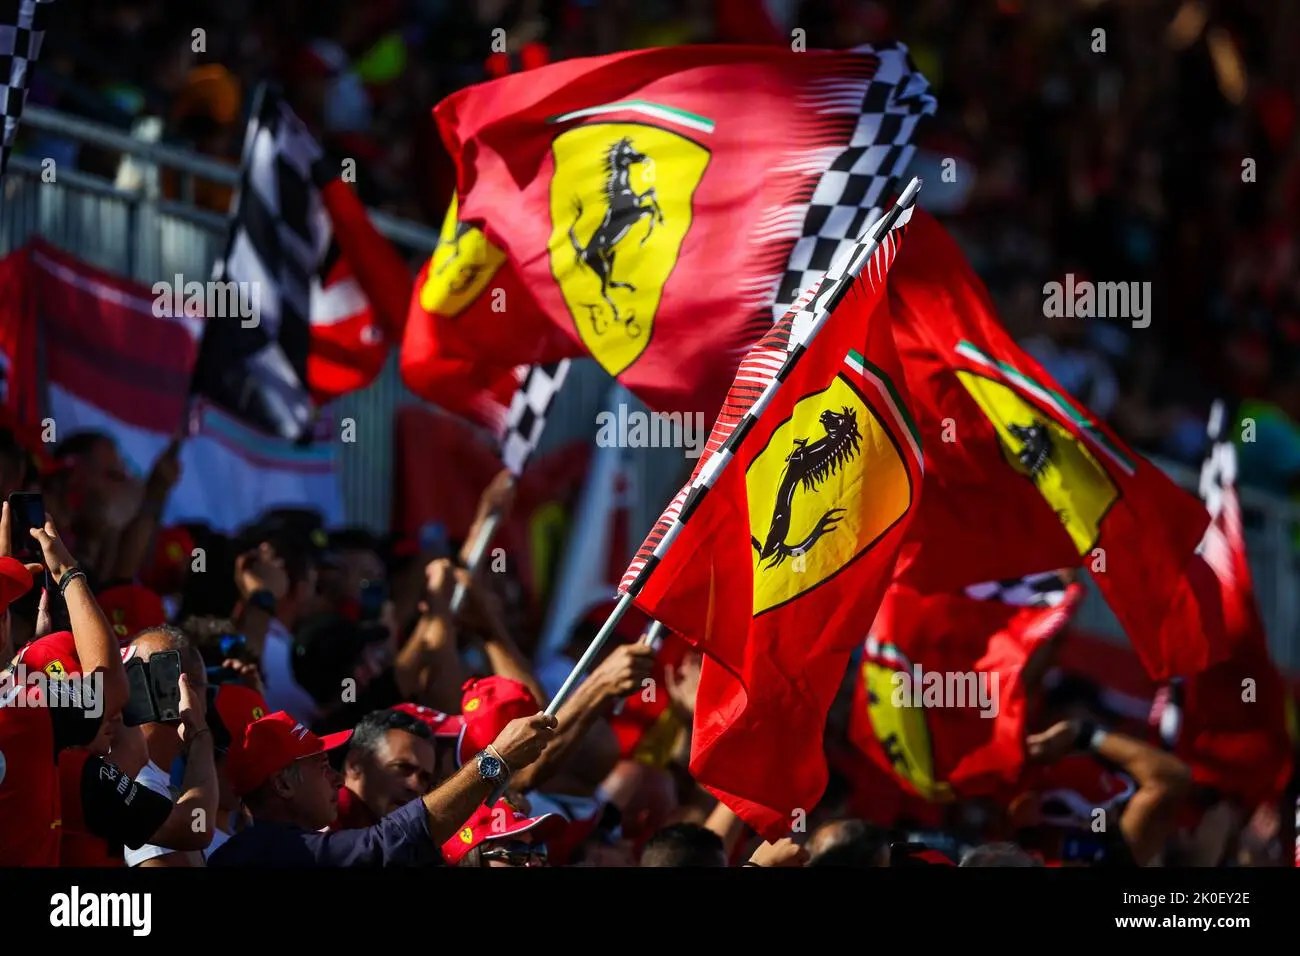 tifosi ferrari - Cómo se le dice a los aficionados de Ferrari